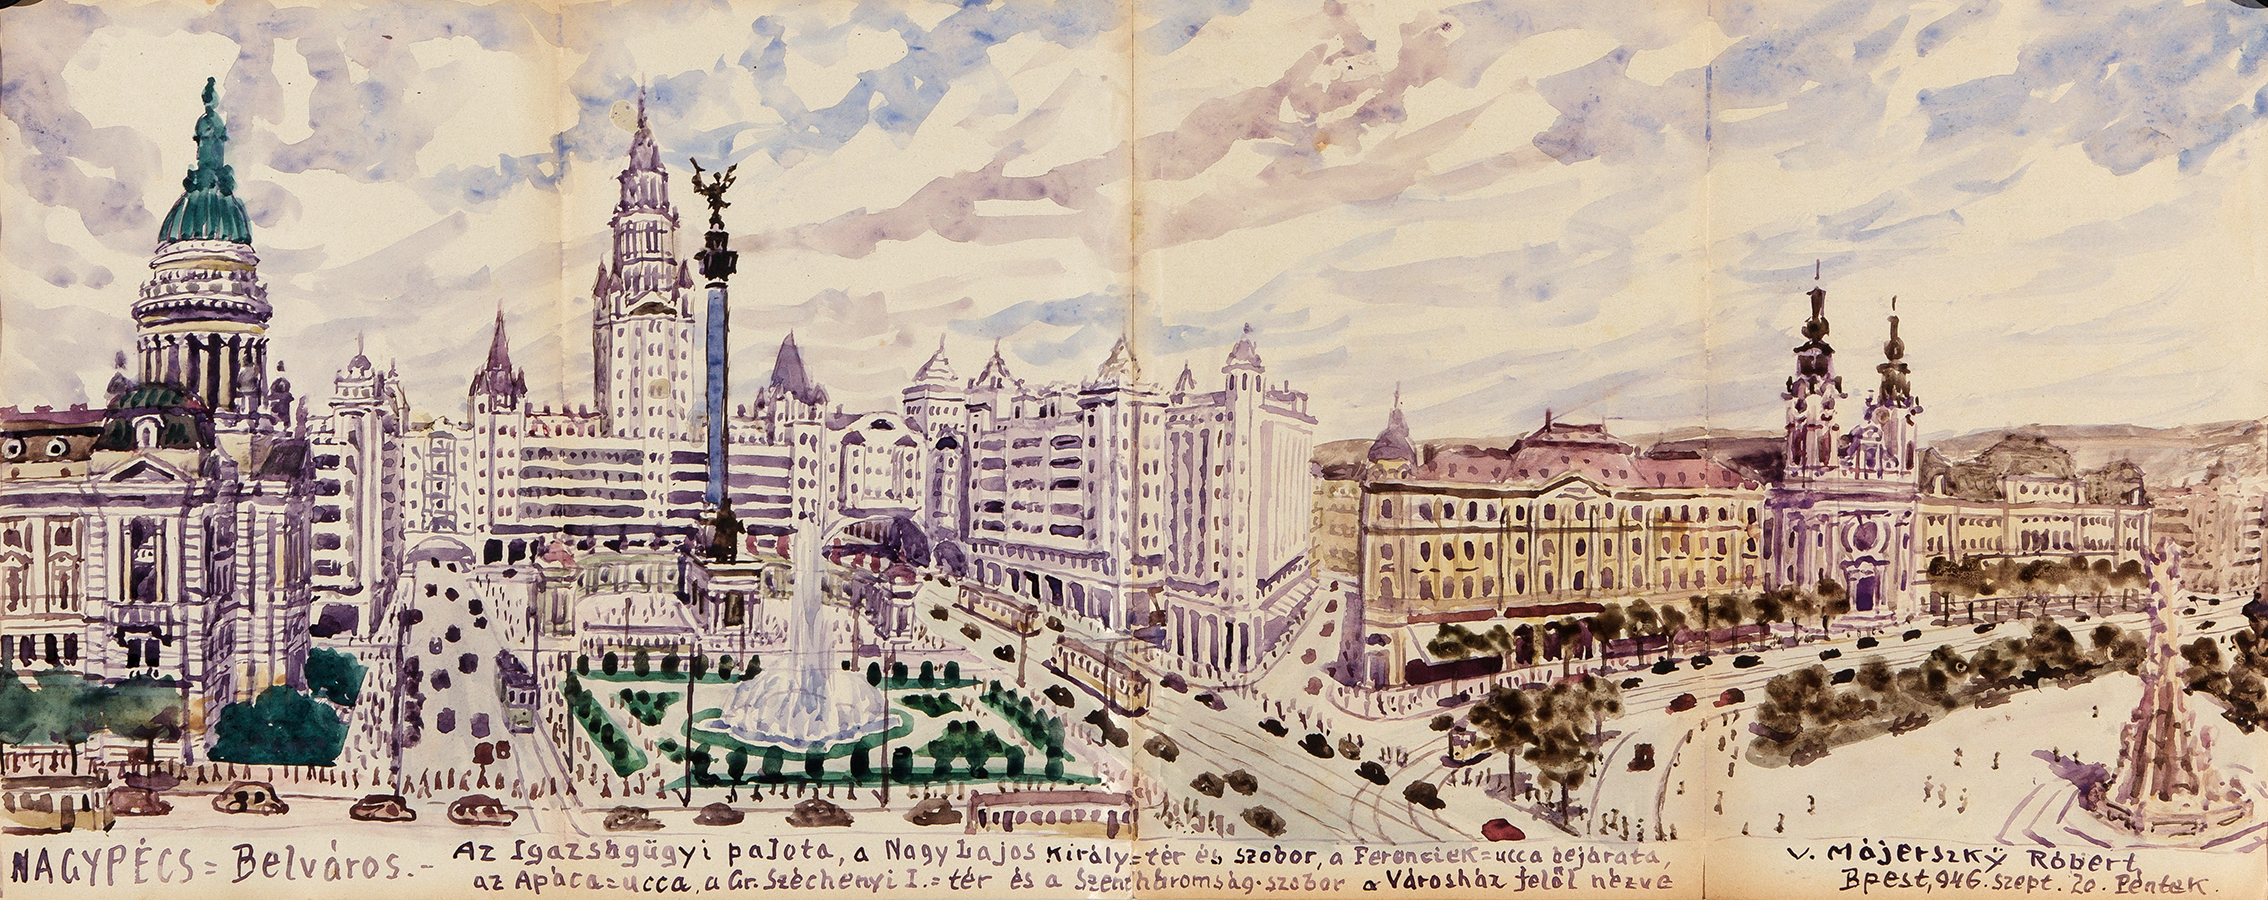 Pécs megapolisz ‘Belváros‘ kerülete. A Nagy Lajos király tér. (Forrás: Janus Pannonius Múzeum)